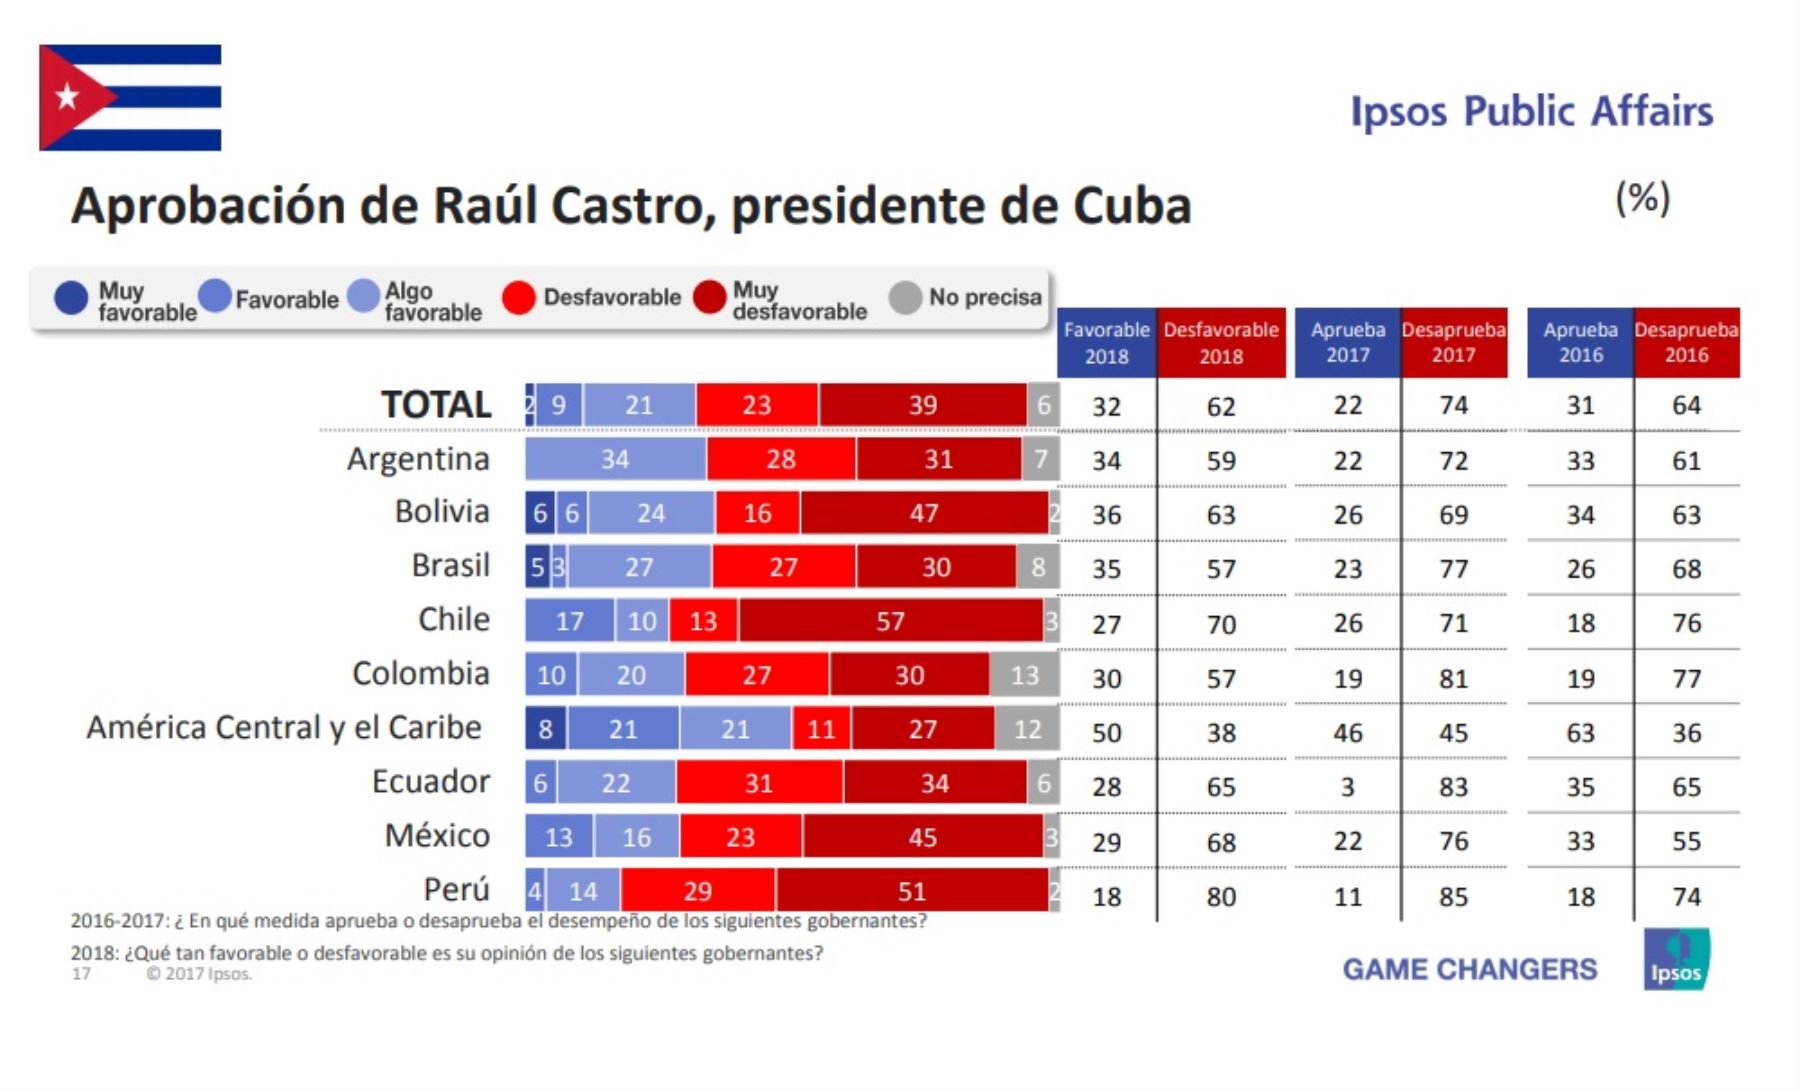 Aprobación del presidente de Cuba, Raúl Castro. Encuesta Ipsos Public Affairs 2018.